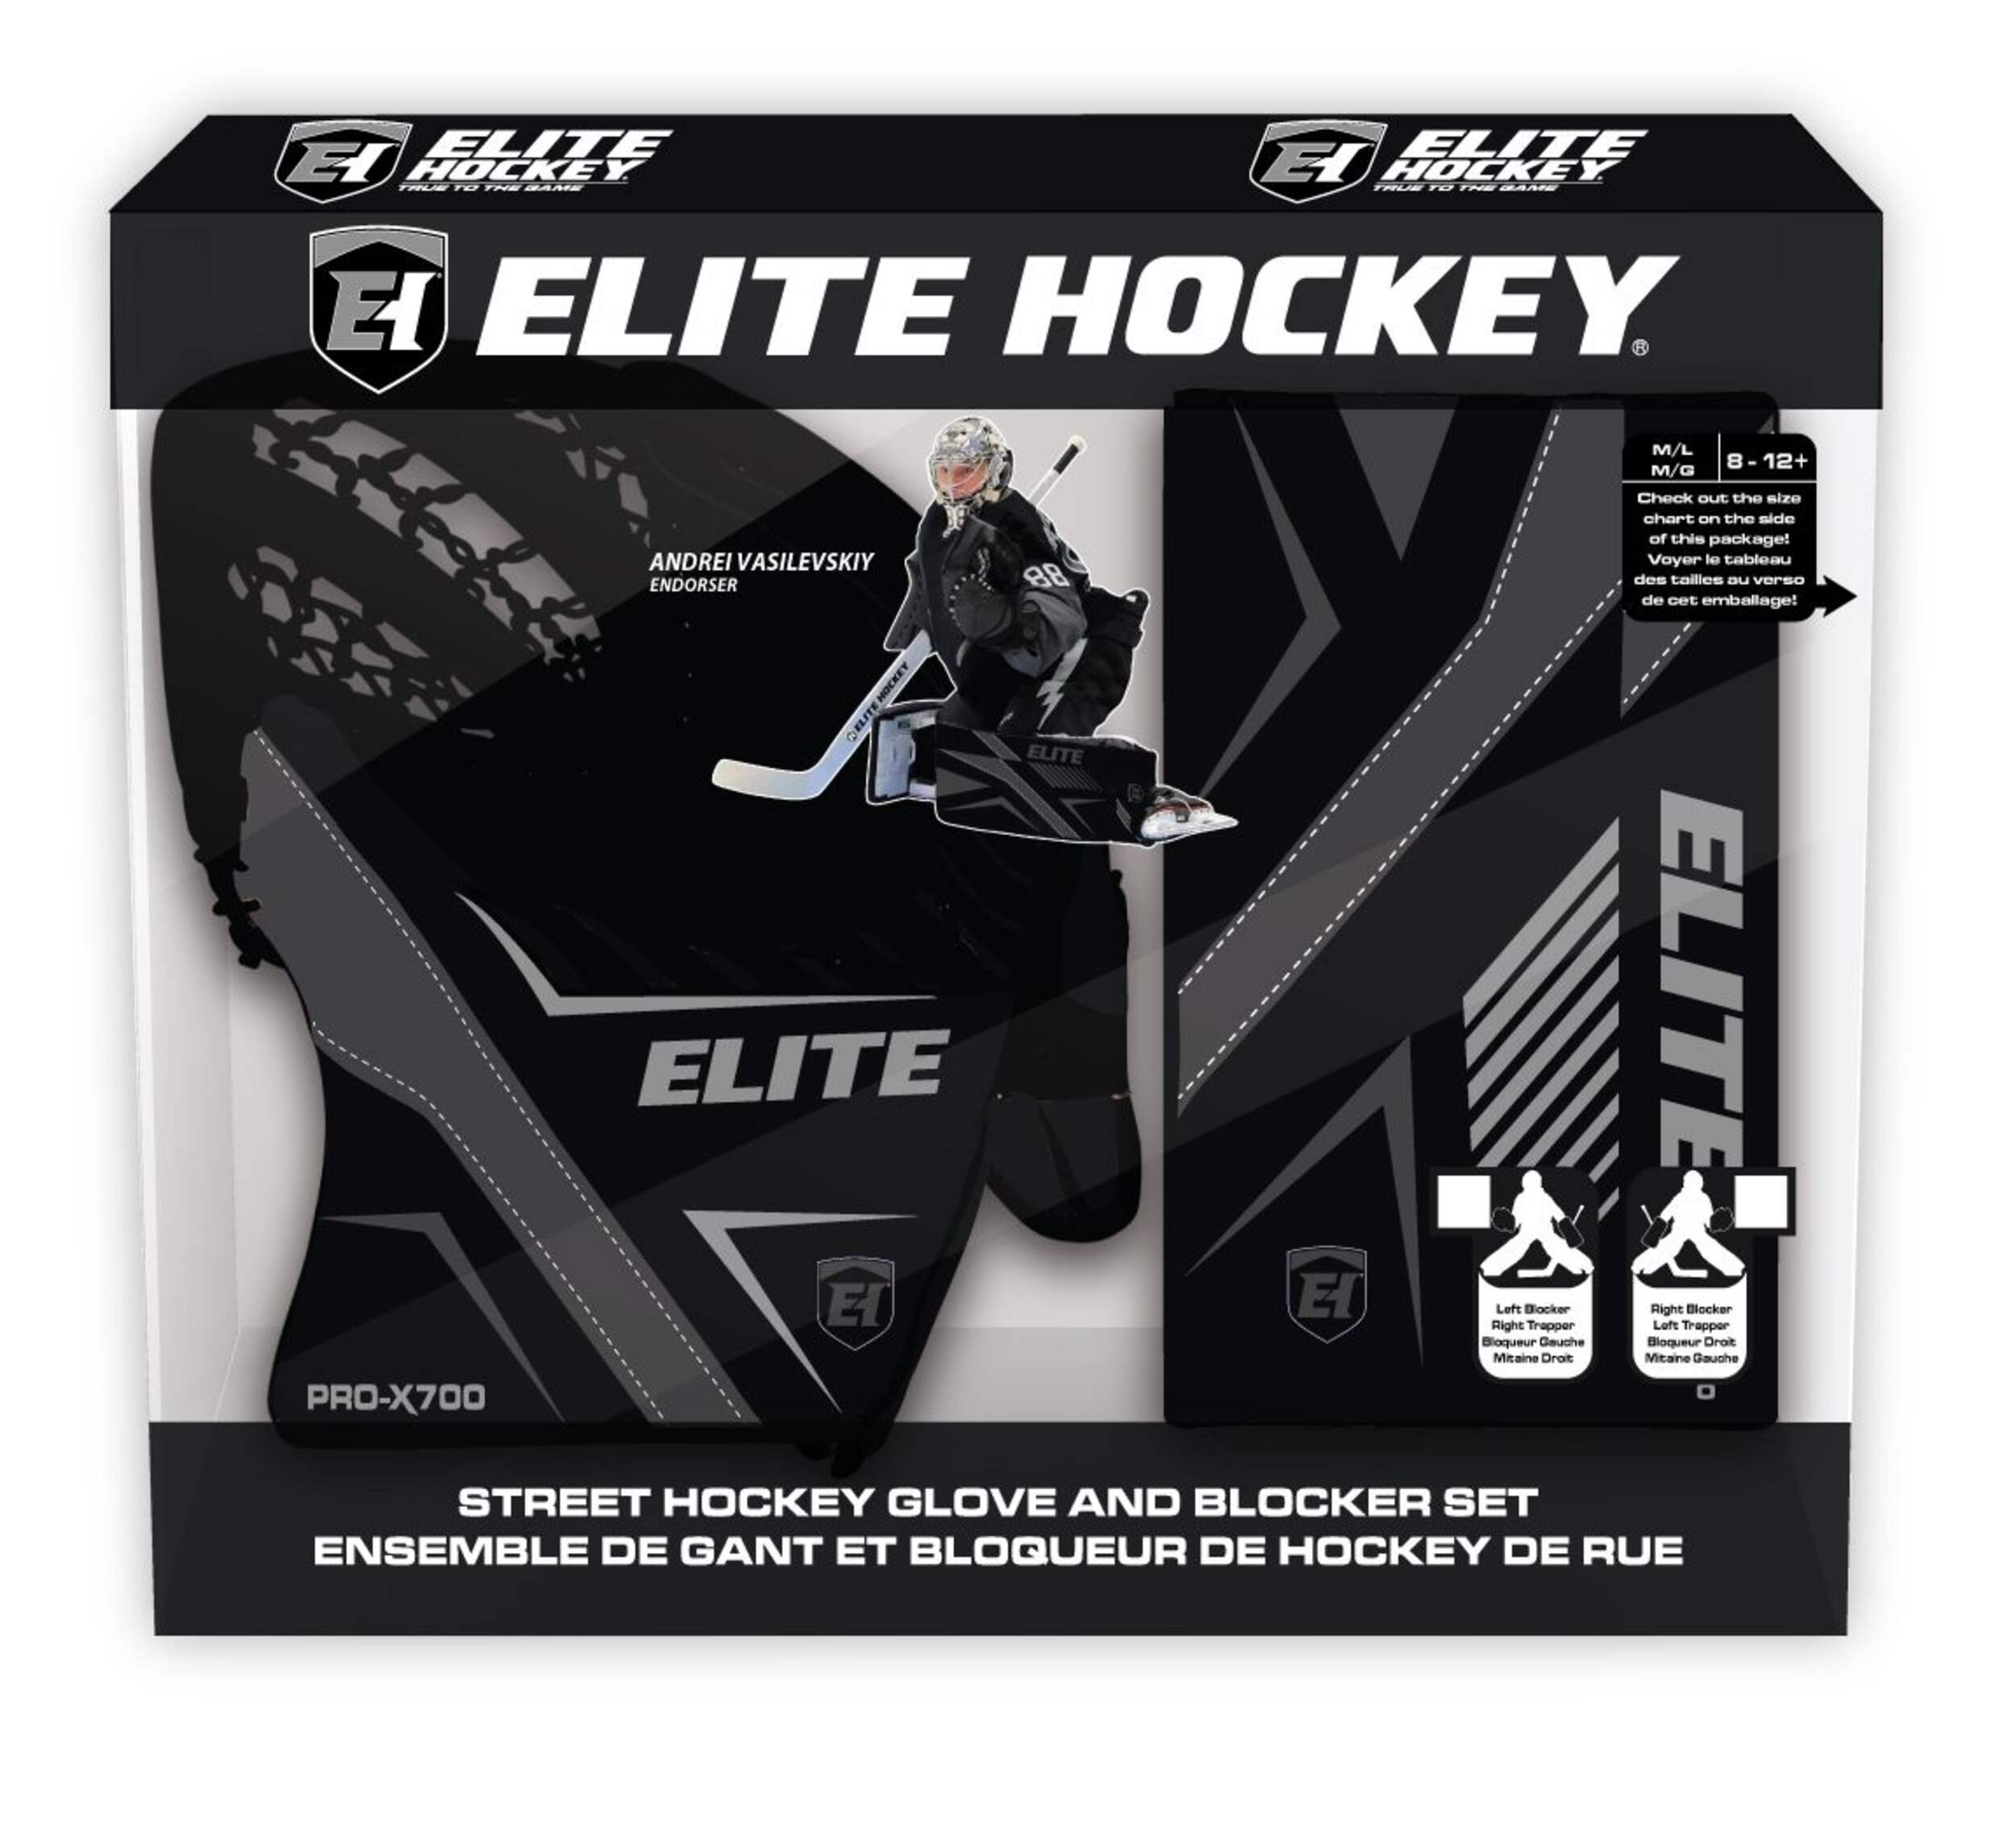 ELITE HOCKEY Vasilevskiy PRO-X700 Street Hockey Intermediate Goalie Glove/Blocker Set - Right (Size M/L, 8-12+)